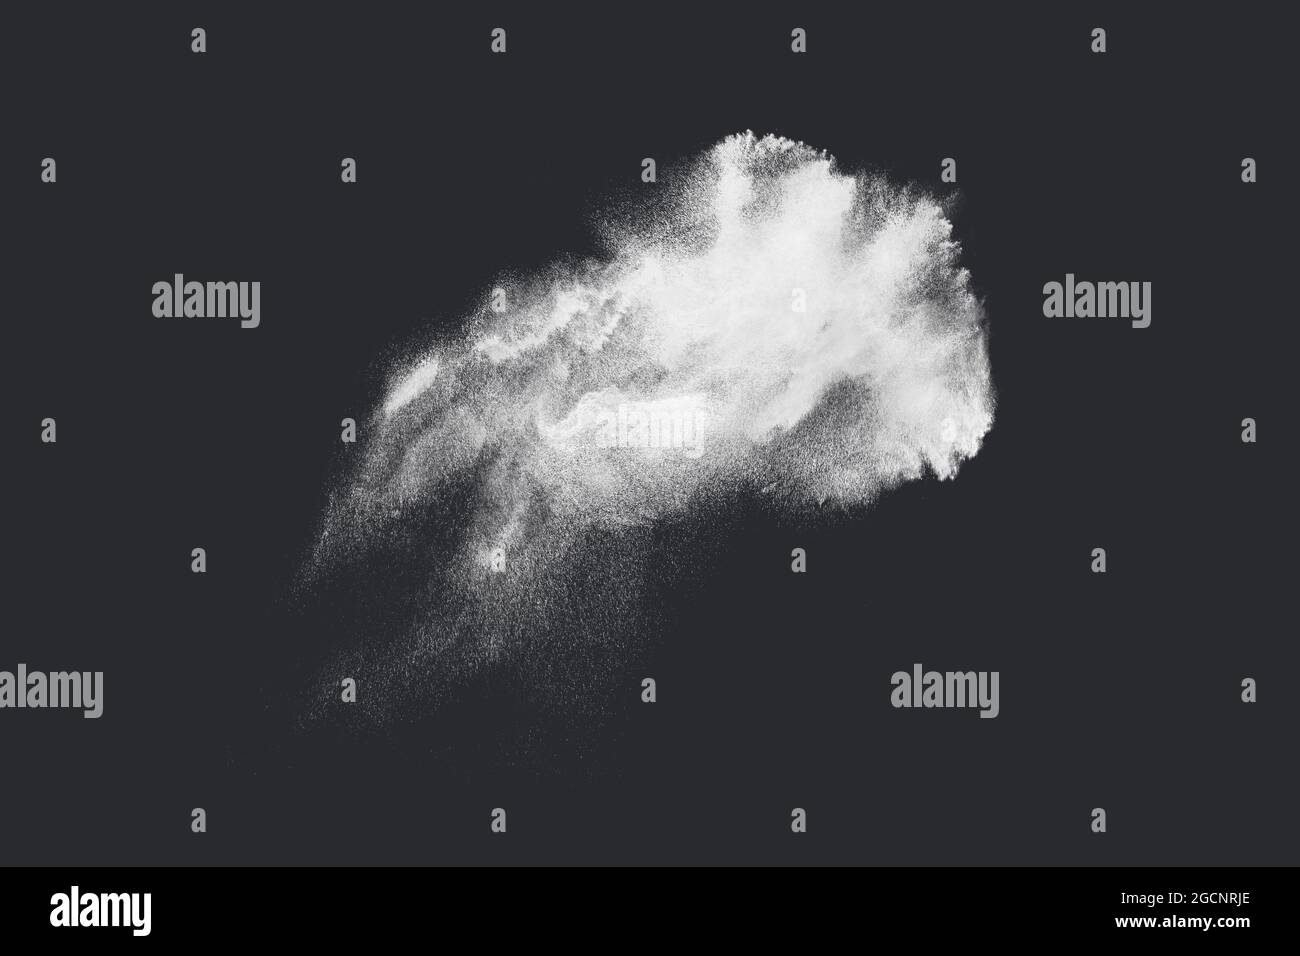 Diseño abstracto de nube de nieve polvo blanco sobre fondo oscuro de explosión Foto de stock